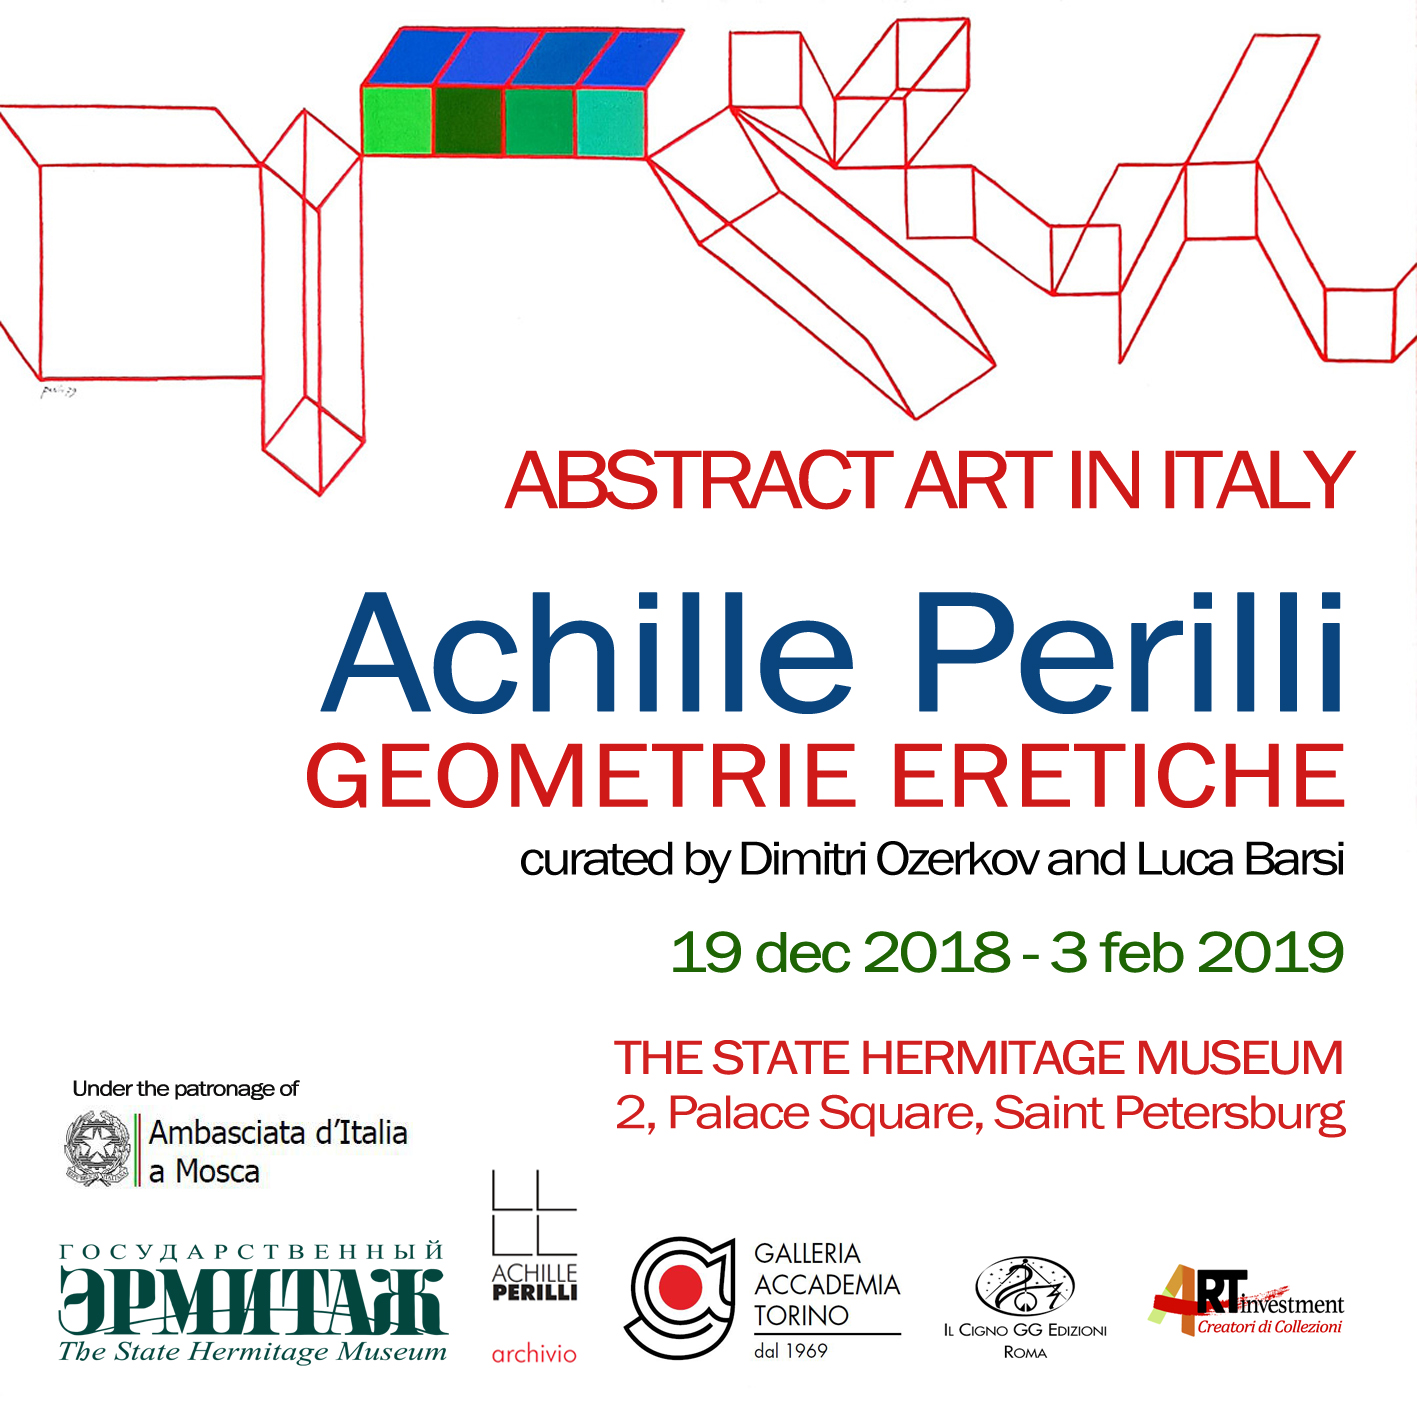  Achille Perilli - Museo Hermitage